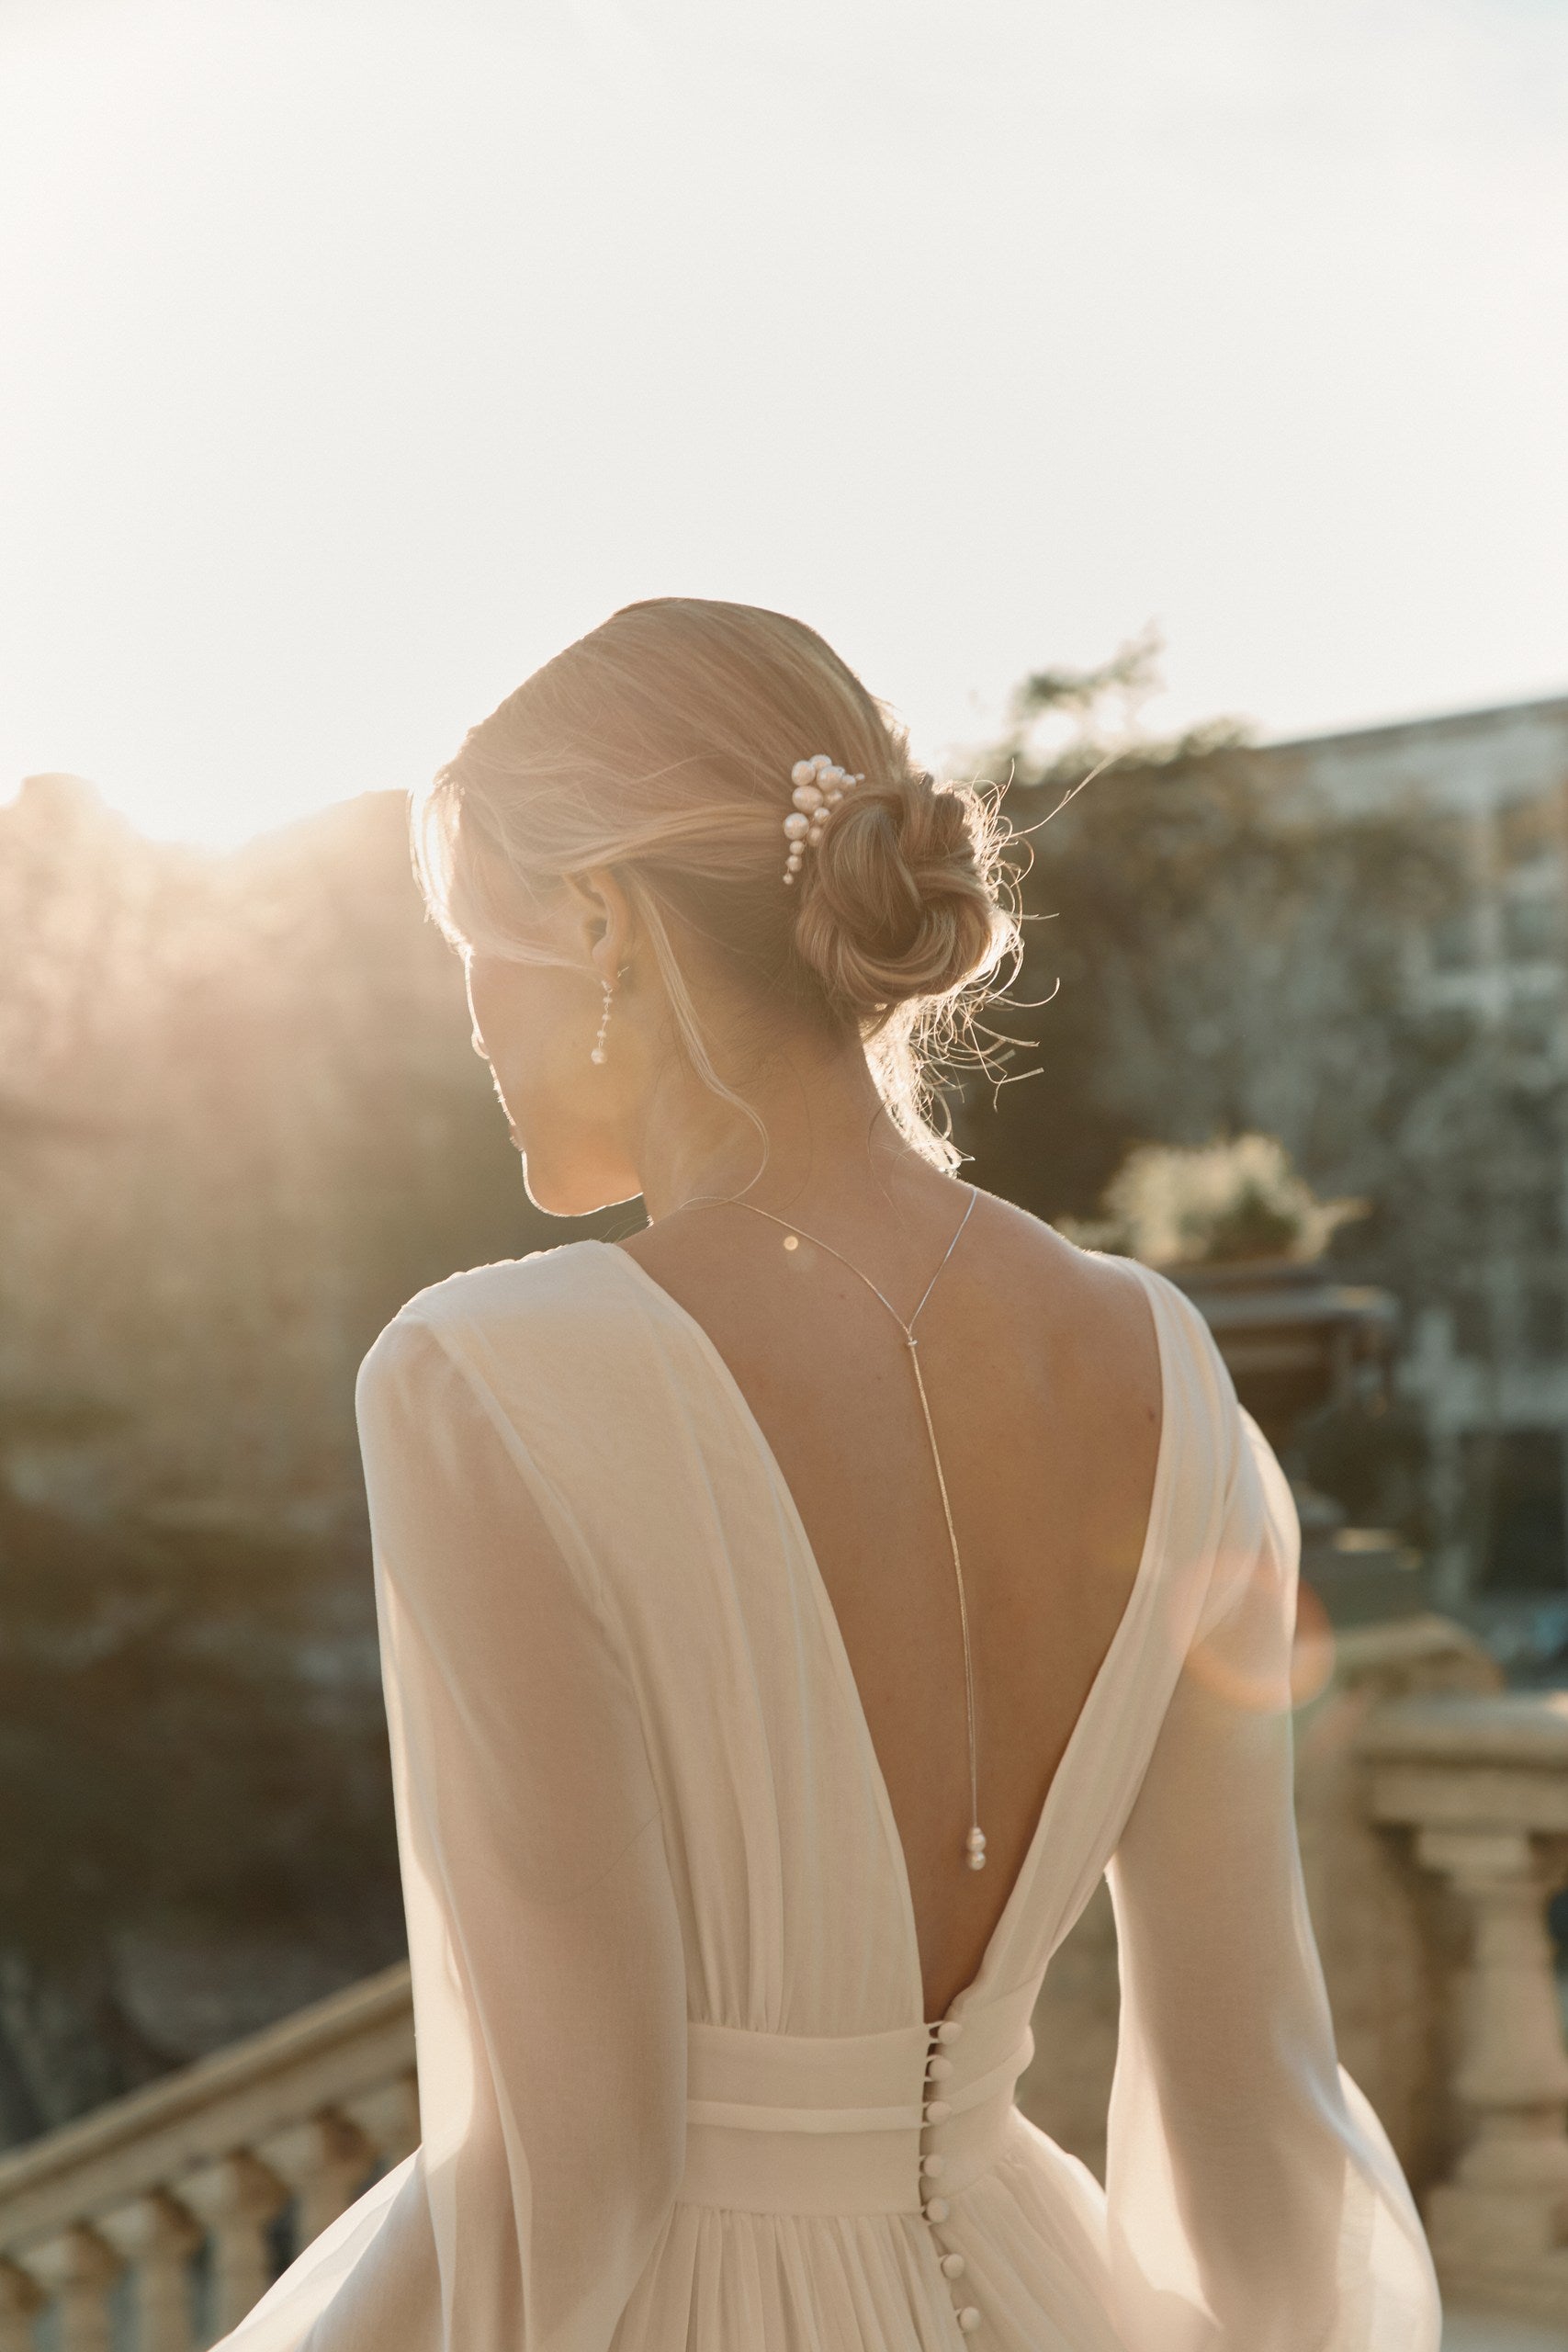 Jeune femme sur le coté qui marche avec sa robe et ces accessoires romantique de mariage 